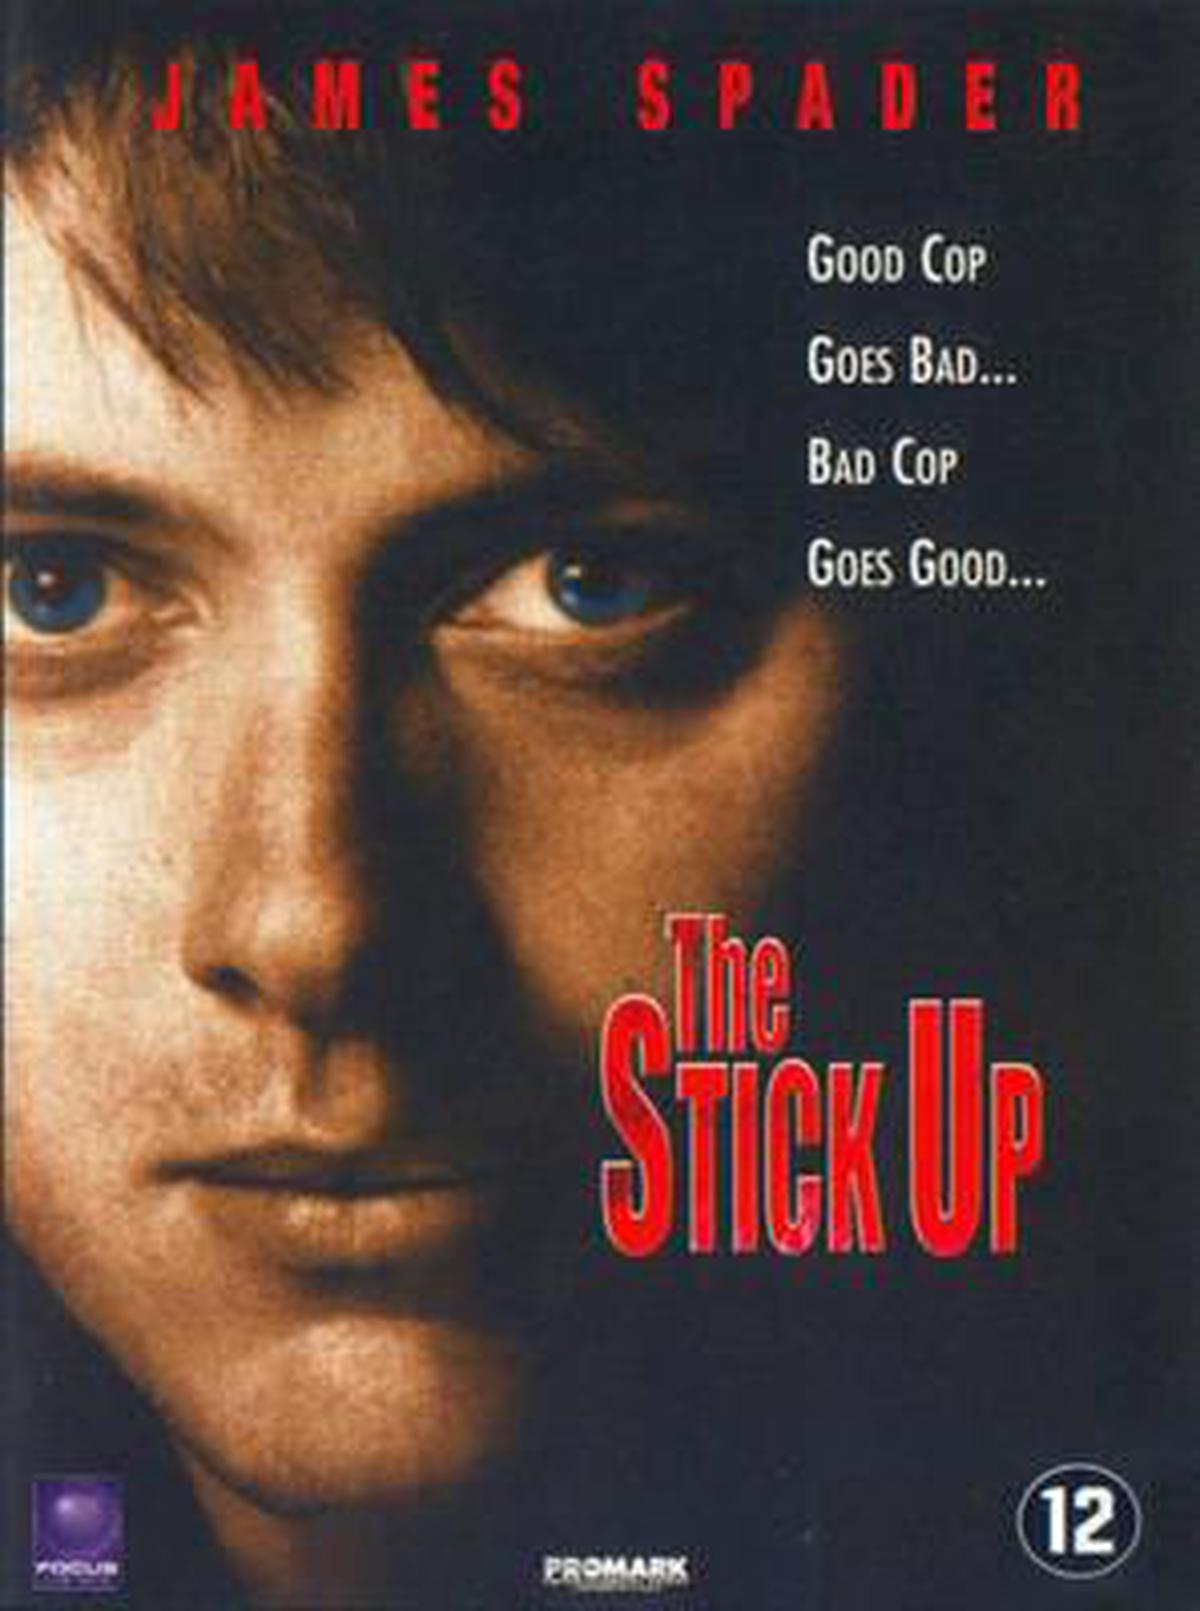 Stickup (2002)